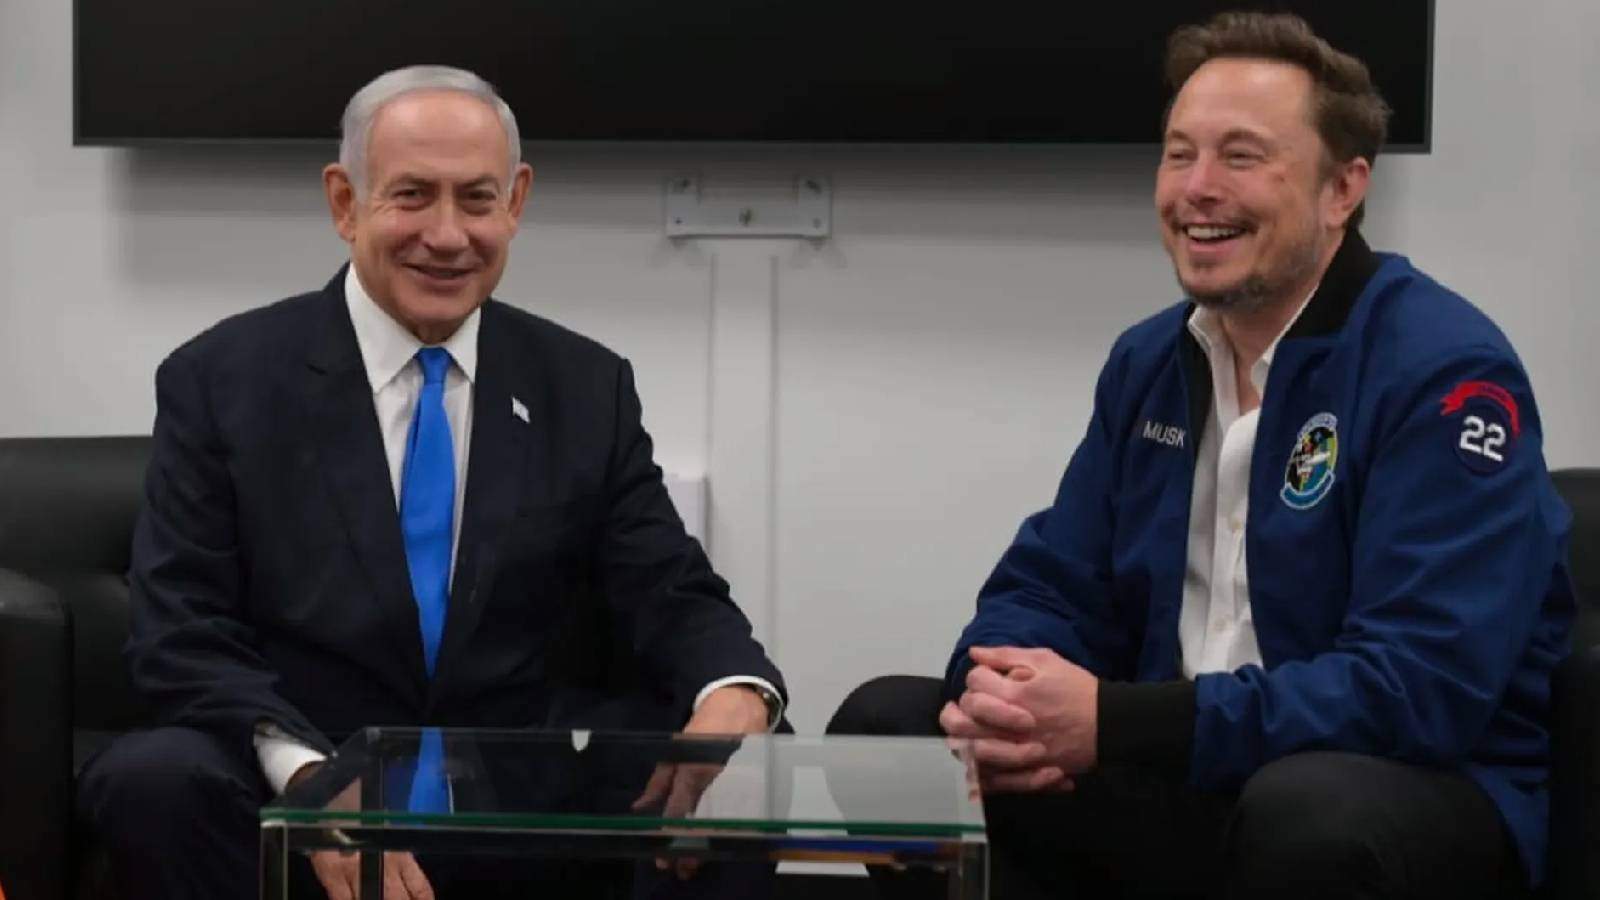 Elon Musk, X'i tamamen ücretli yapmaya hazırlanıyor - Dünyanın önde gelen iş insanlarından biri olan Elon Musk, İsrail Başbakanı Benjamin Netanyahu ile bir araya gelerek teknoloji işbirliği ve geleceğin projeleri üzerine görüşmelerde bulundu. Görüşme, Musk'ın Tesla, SpaceX ve diğer şirketleri ile İsrail'in teknoloji ve inovasyon alanındaki potansiyel işbirliğini ele almak amacıyla gerçekleşti.